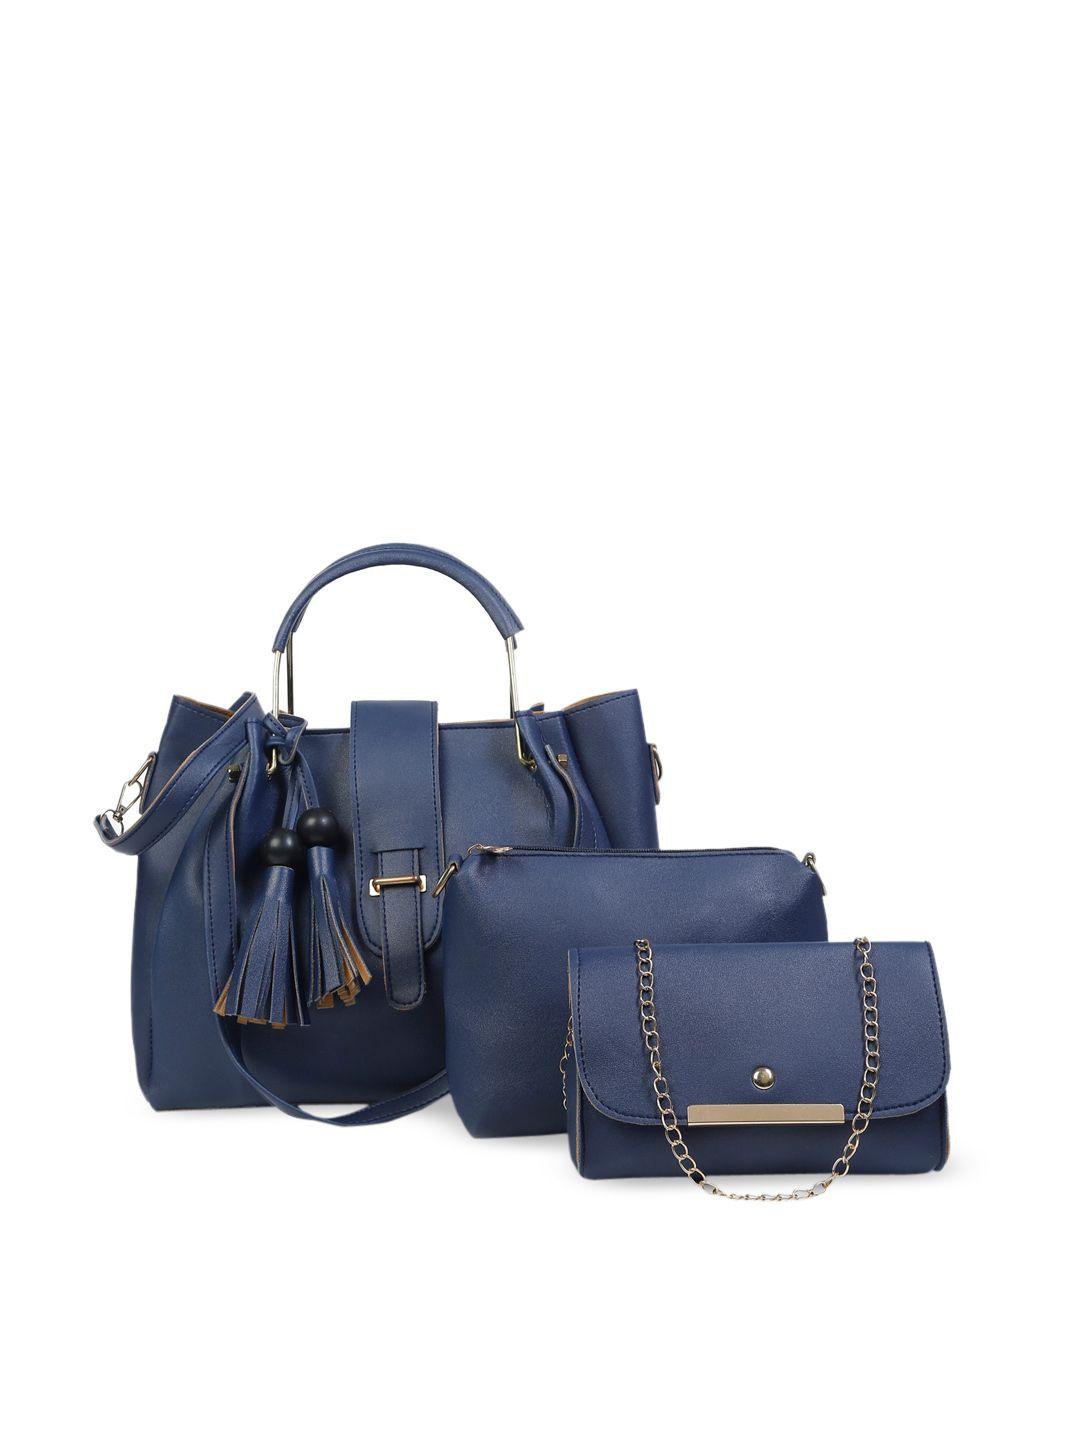 fargo set of 3 navy blue handbags